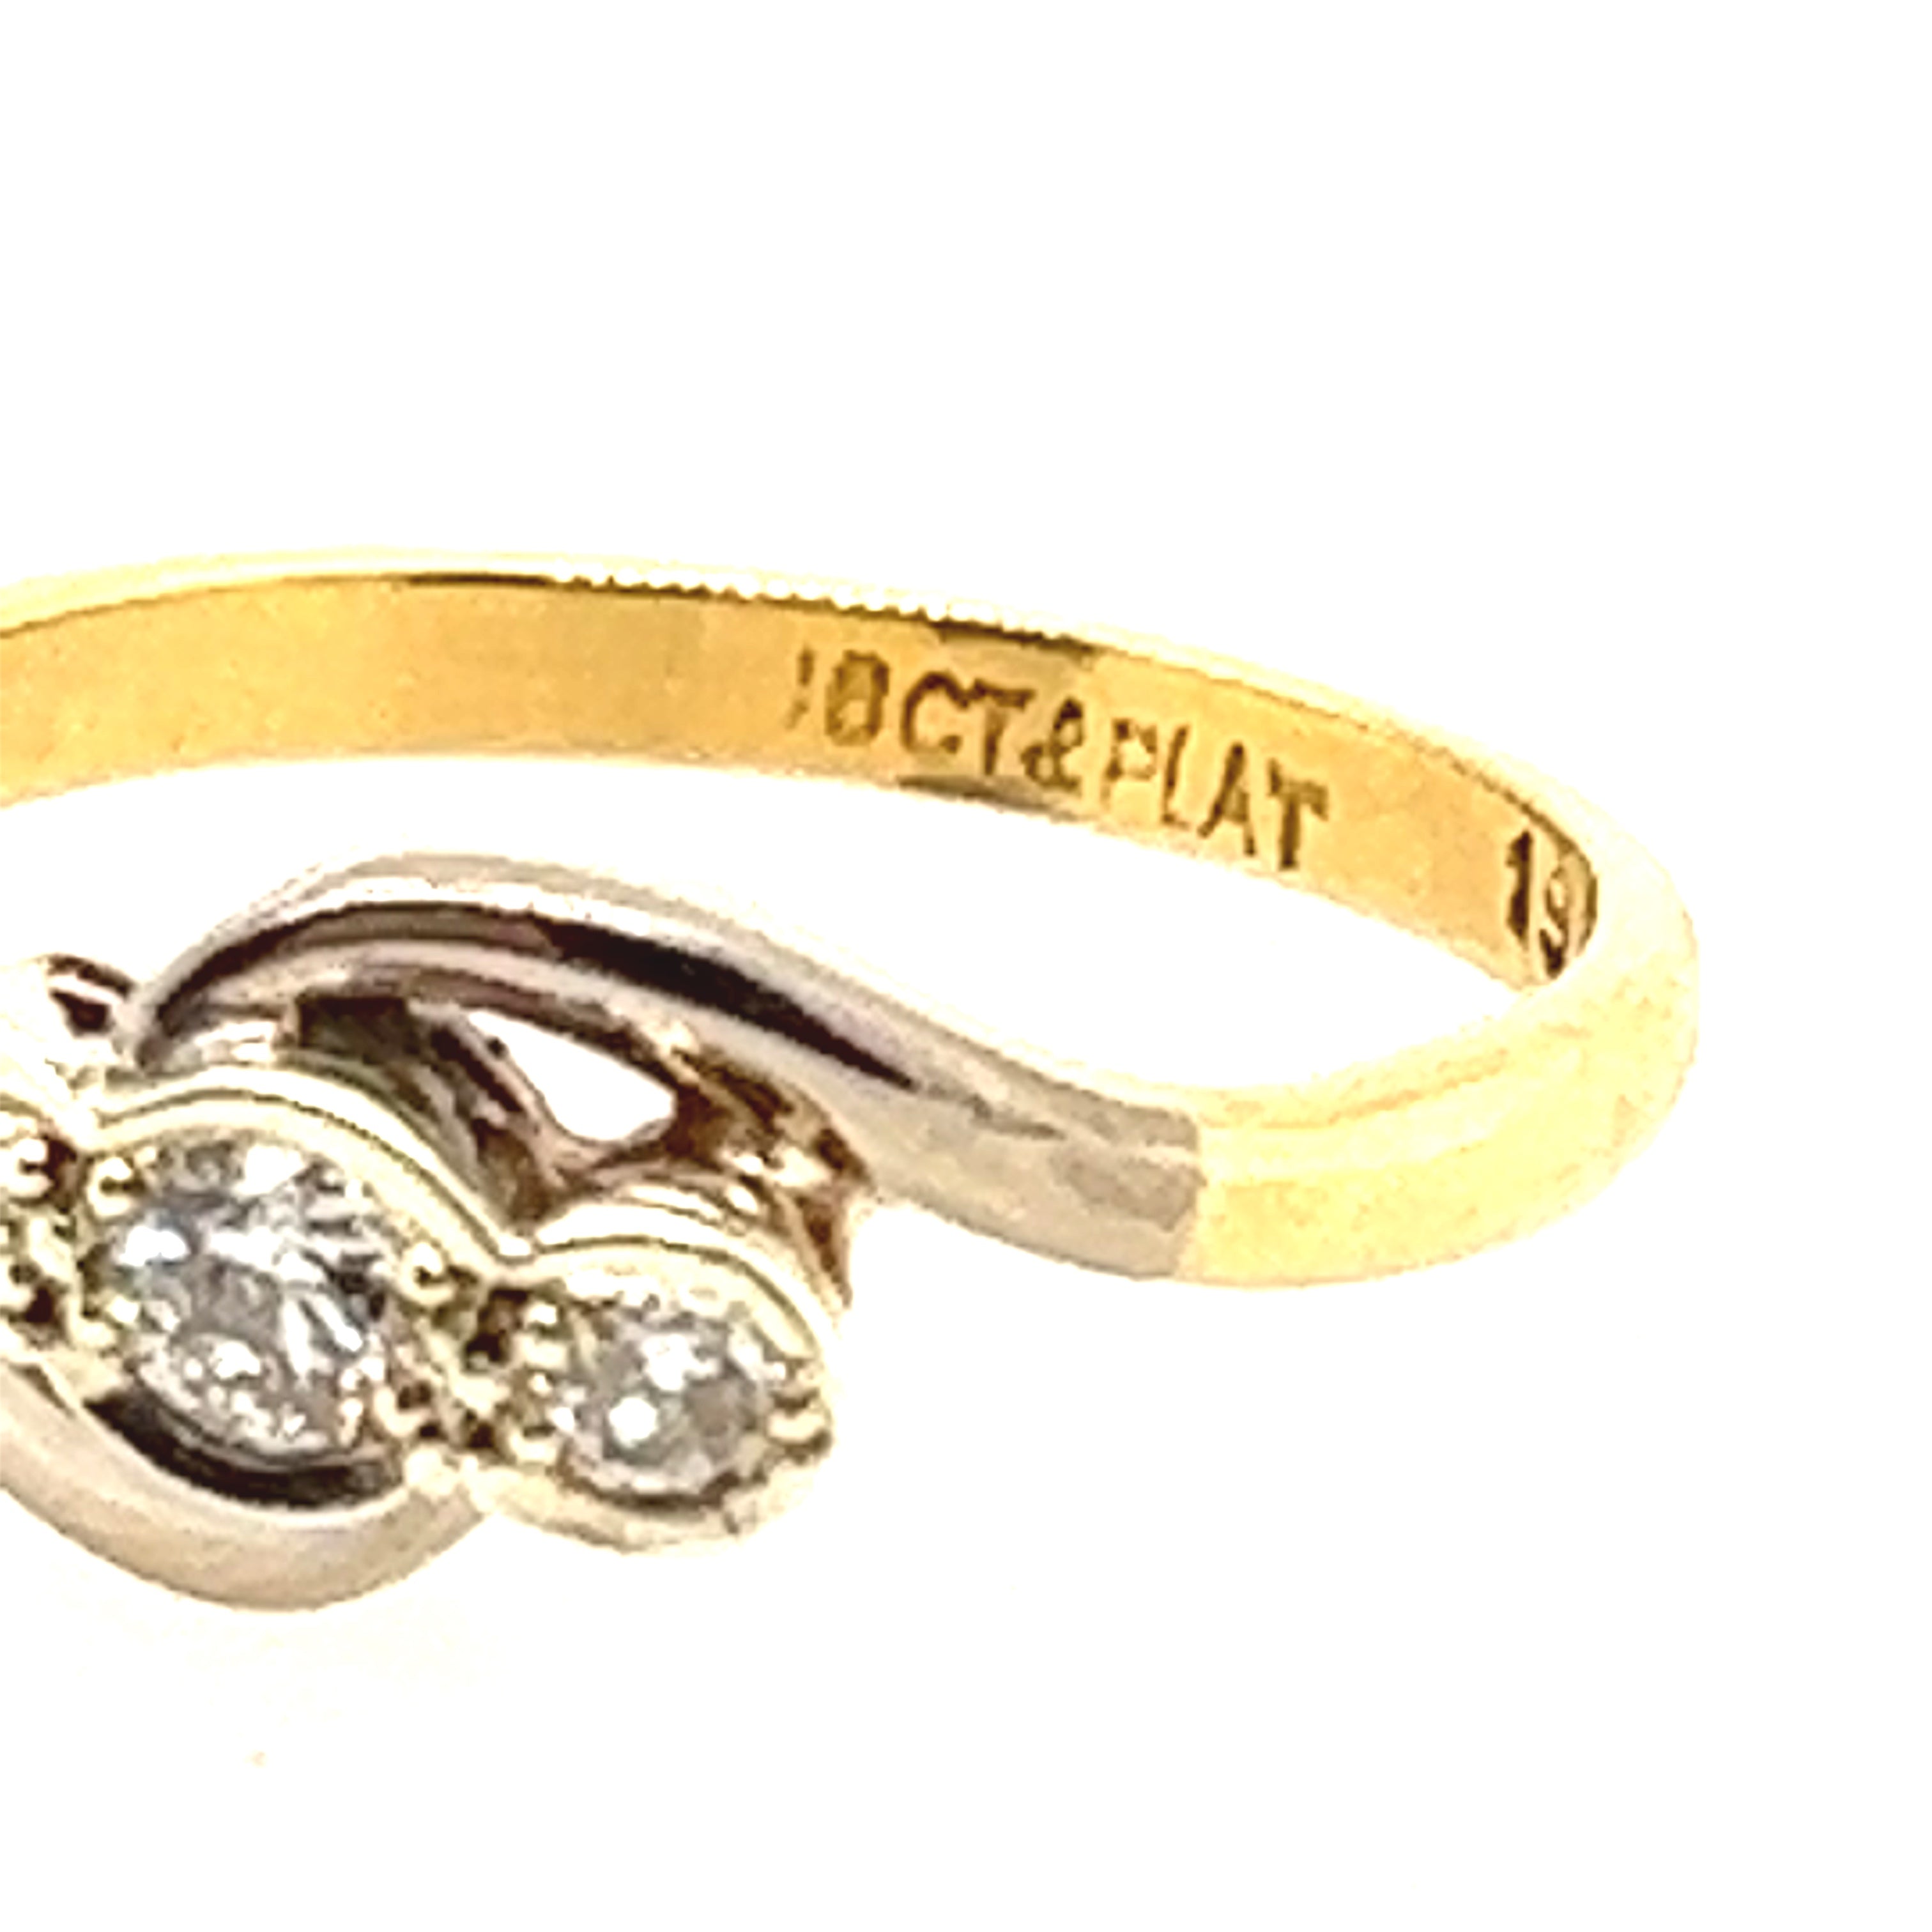 18ct Yellow & White Gold Diamond Handmade Ring